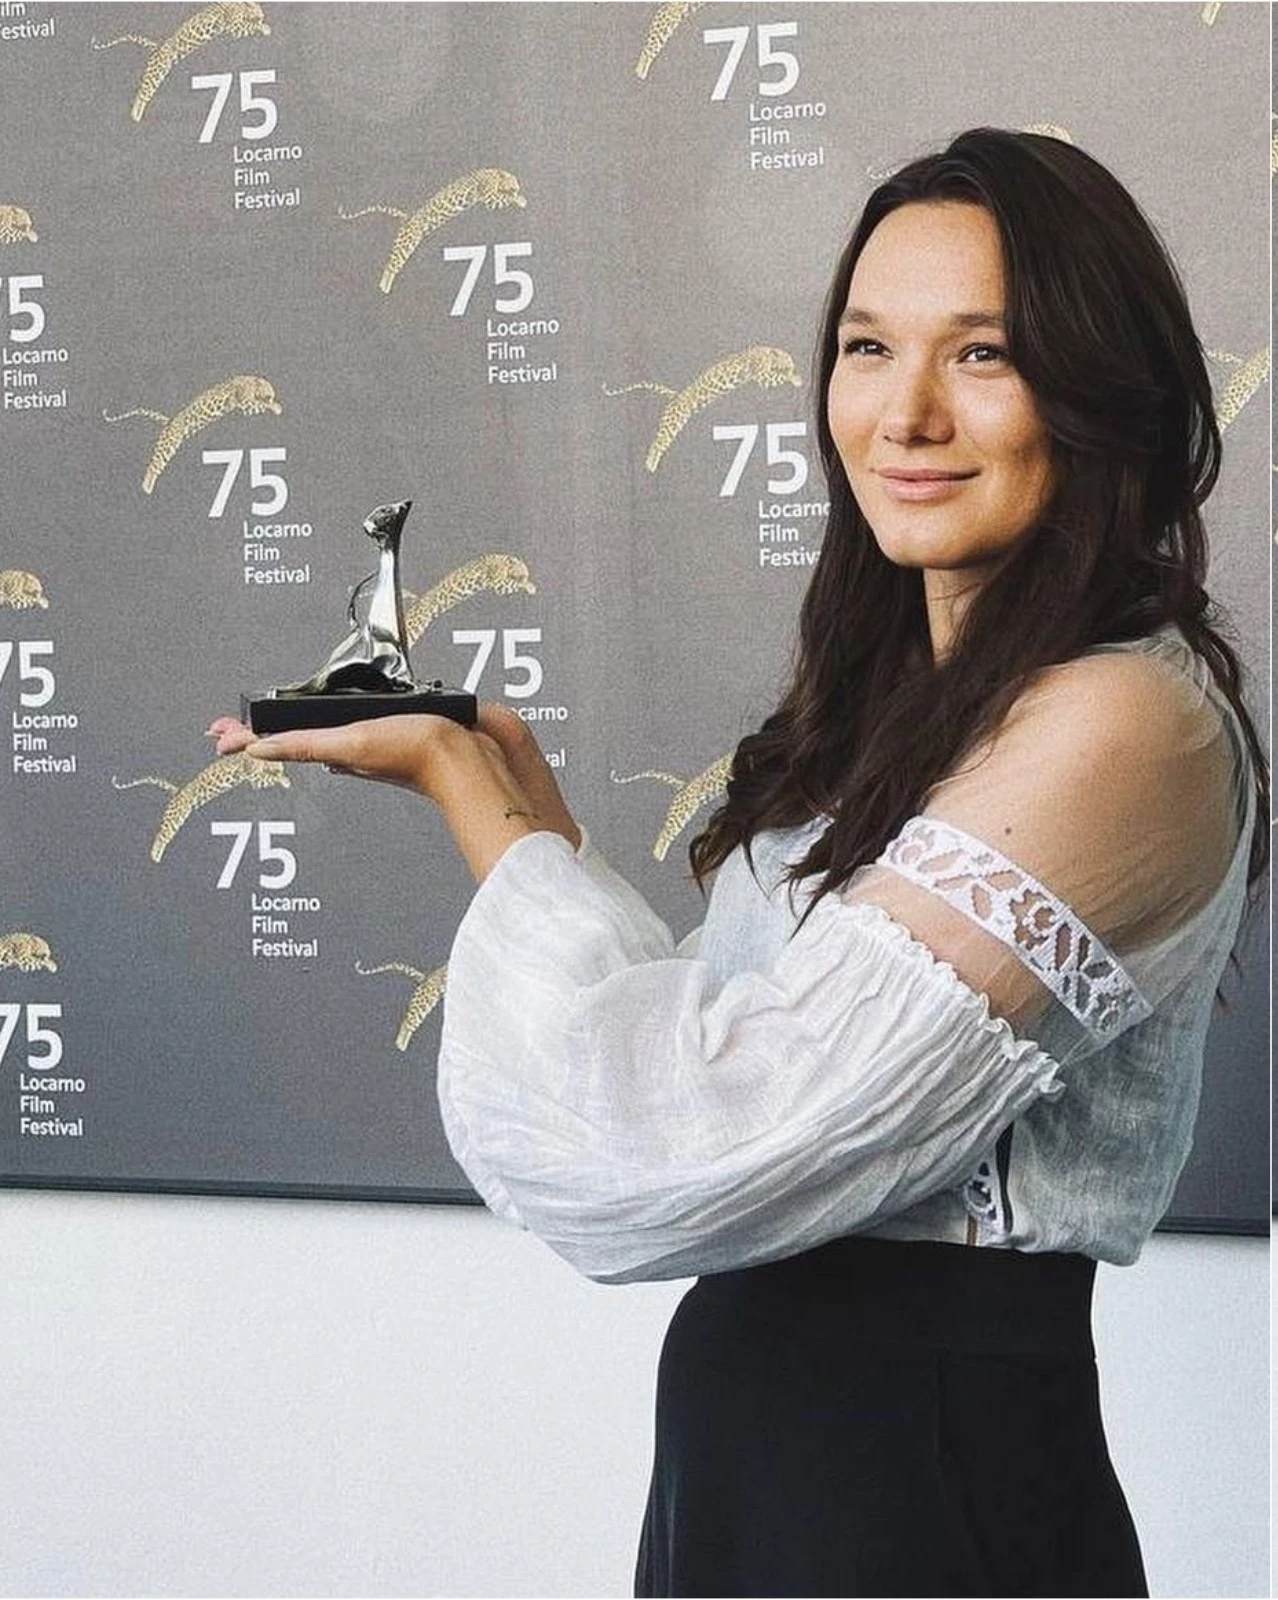 Крістіна Тинкевич із нагородою кінофестивалю в Локарно за стрічку "Як там Катя?"1